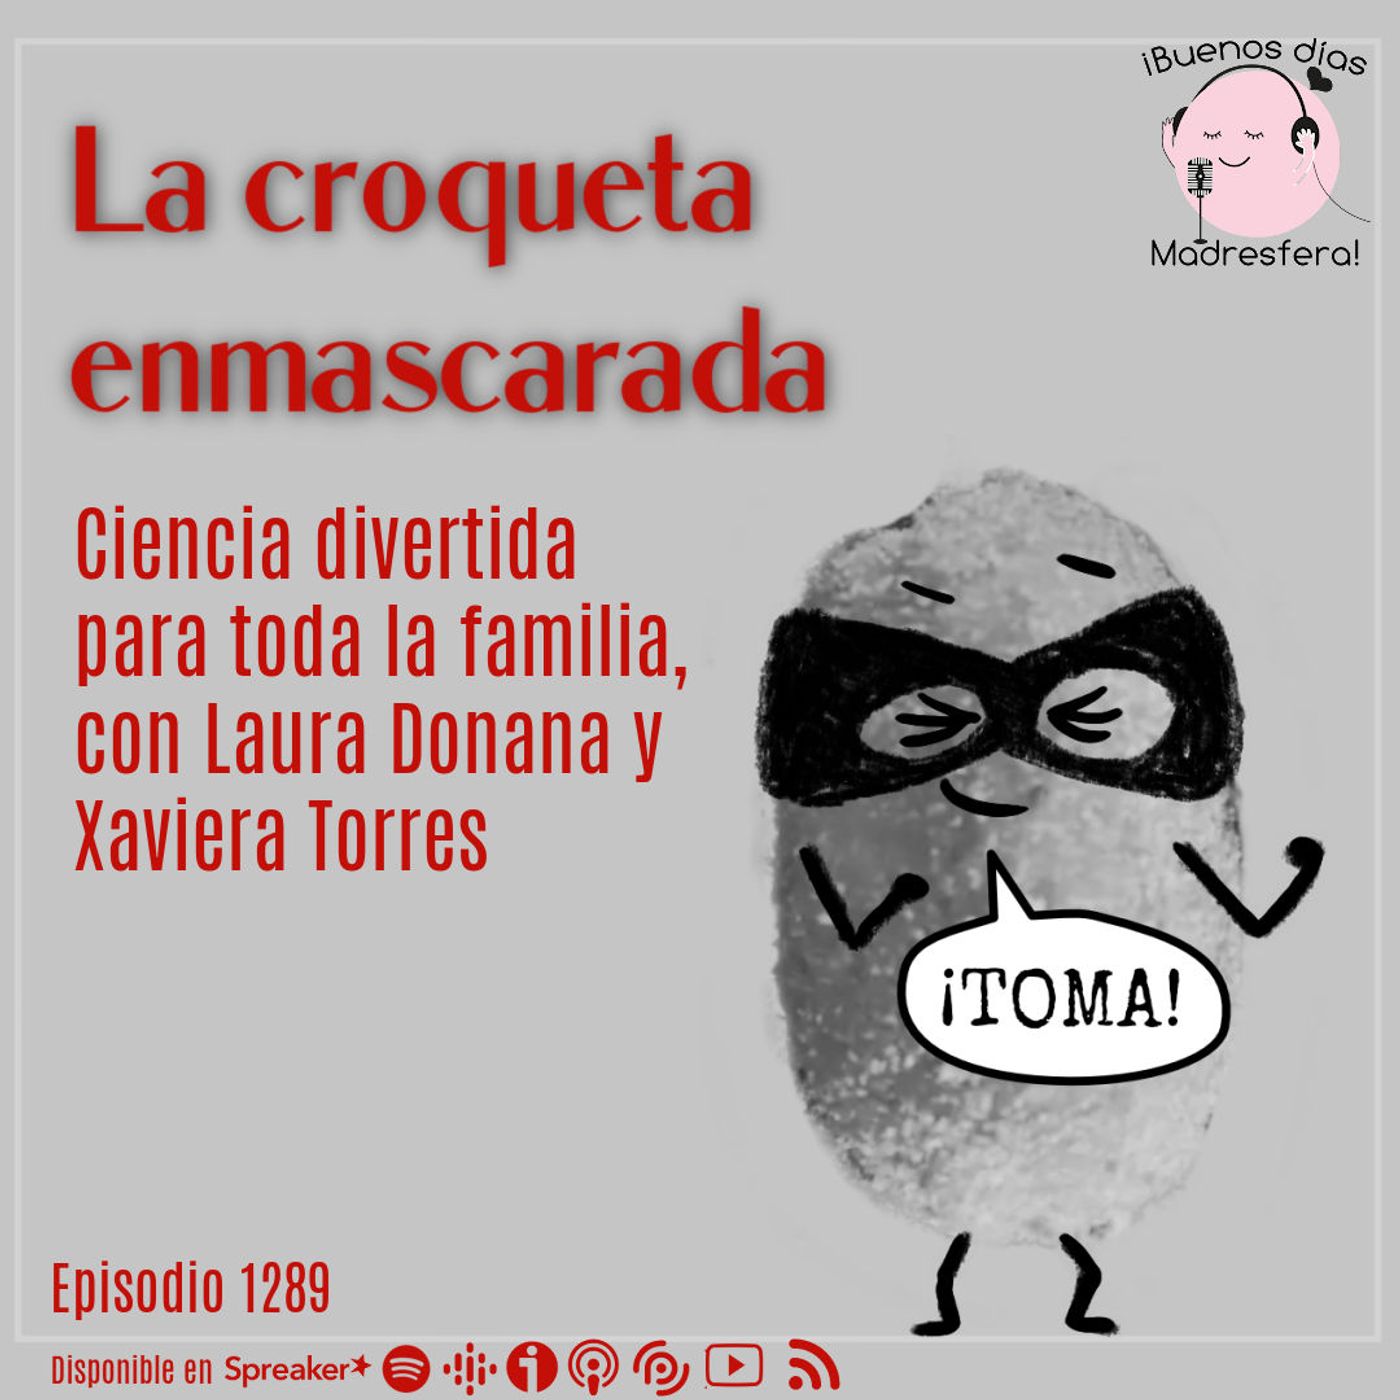 La croqueta enmascarada: Fanzine de ciencia divertida para toda la familia, con Laura Donada y Xaviera Torres